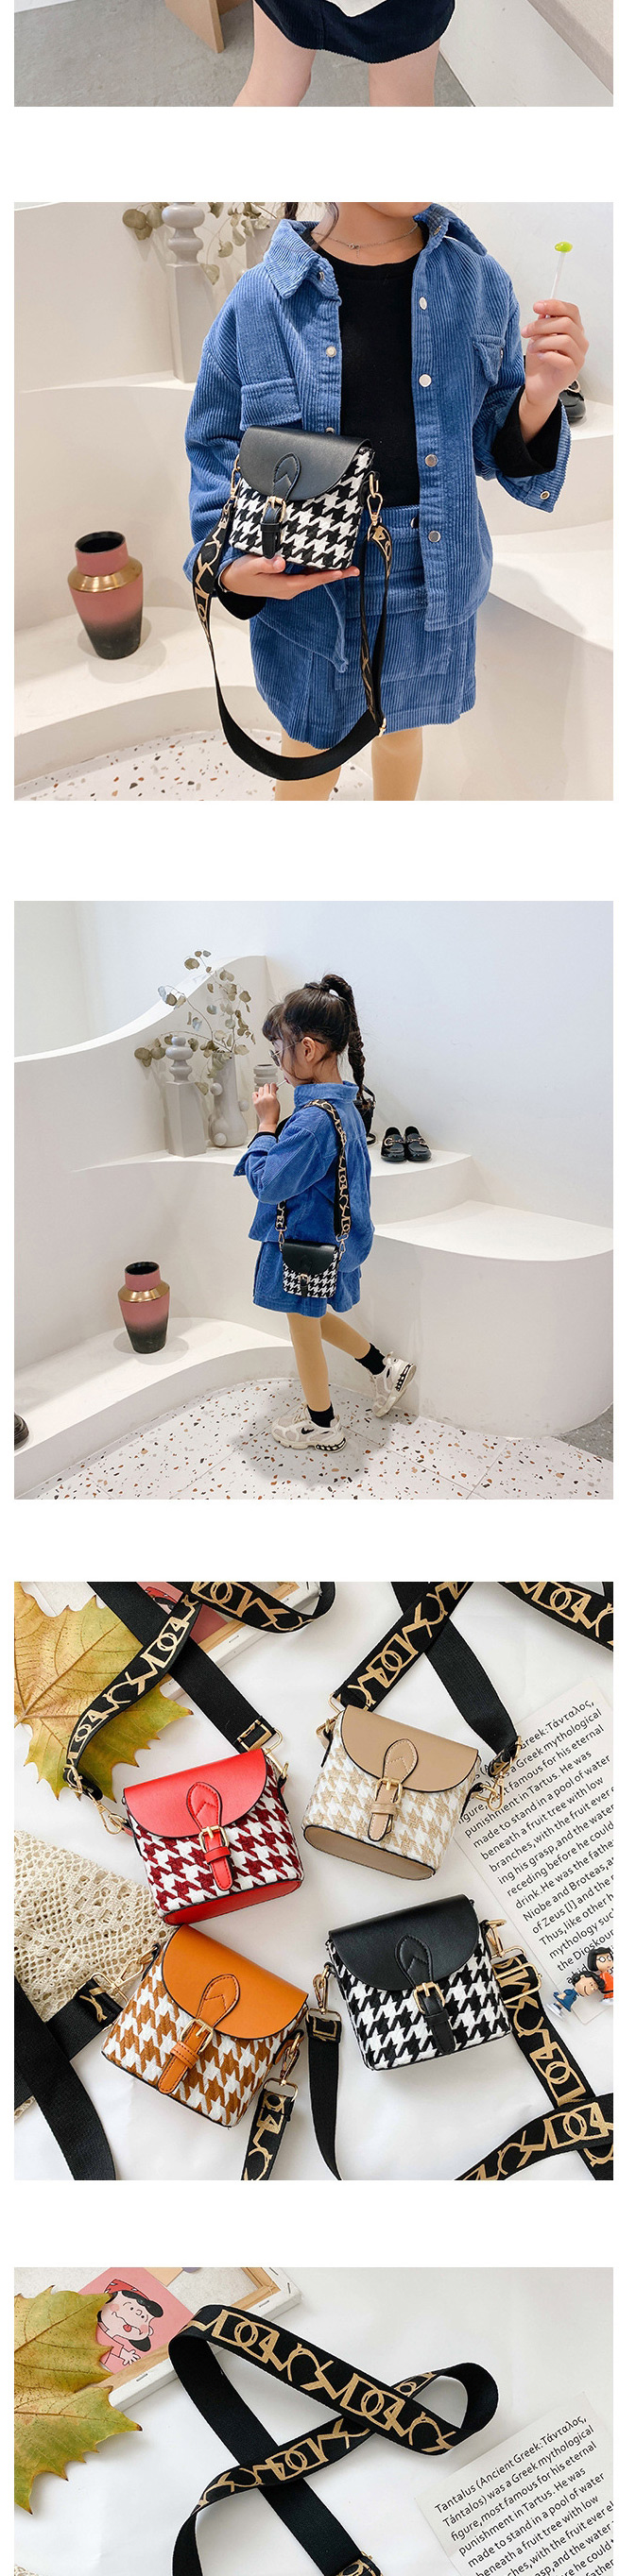 Fashion Black Childrens Single Shoulder Messenger Bag With Lattice Belt Buckle,Shoulder bags